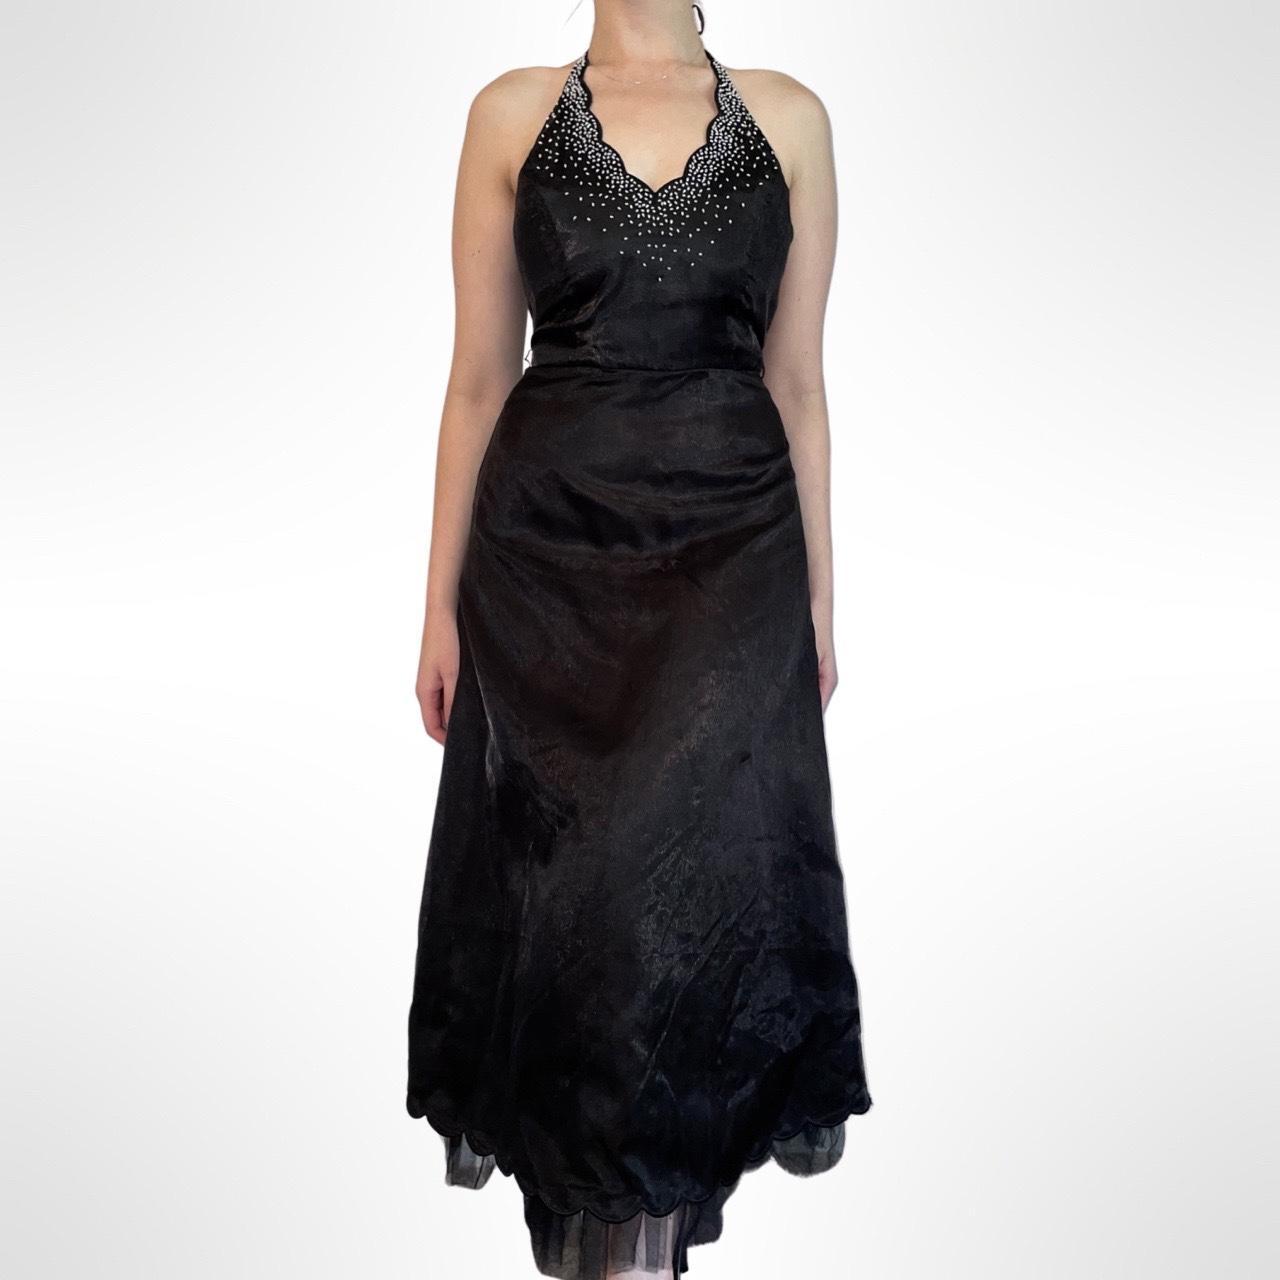 Vintage 90s/y2k black halter top formal dress The... - Depop